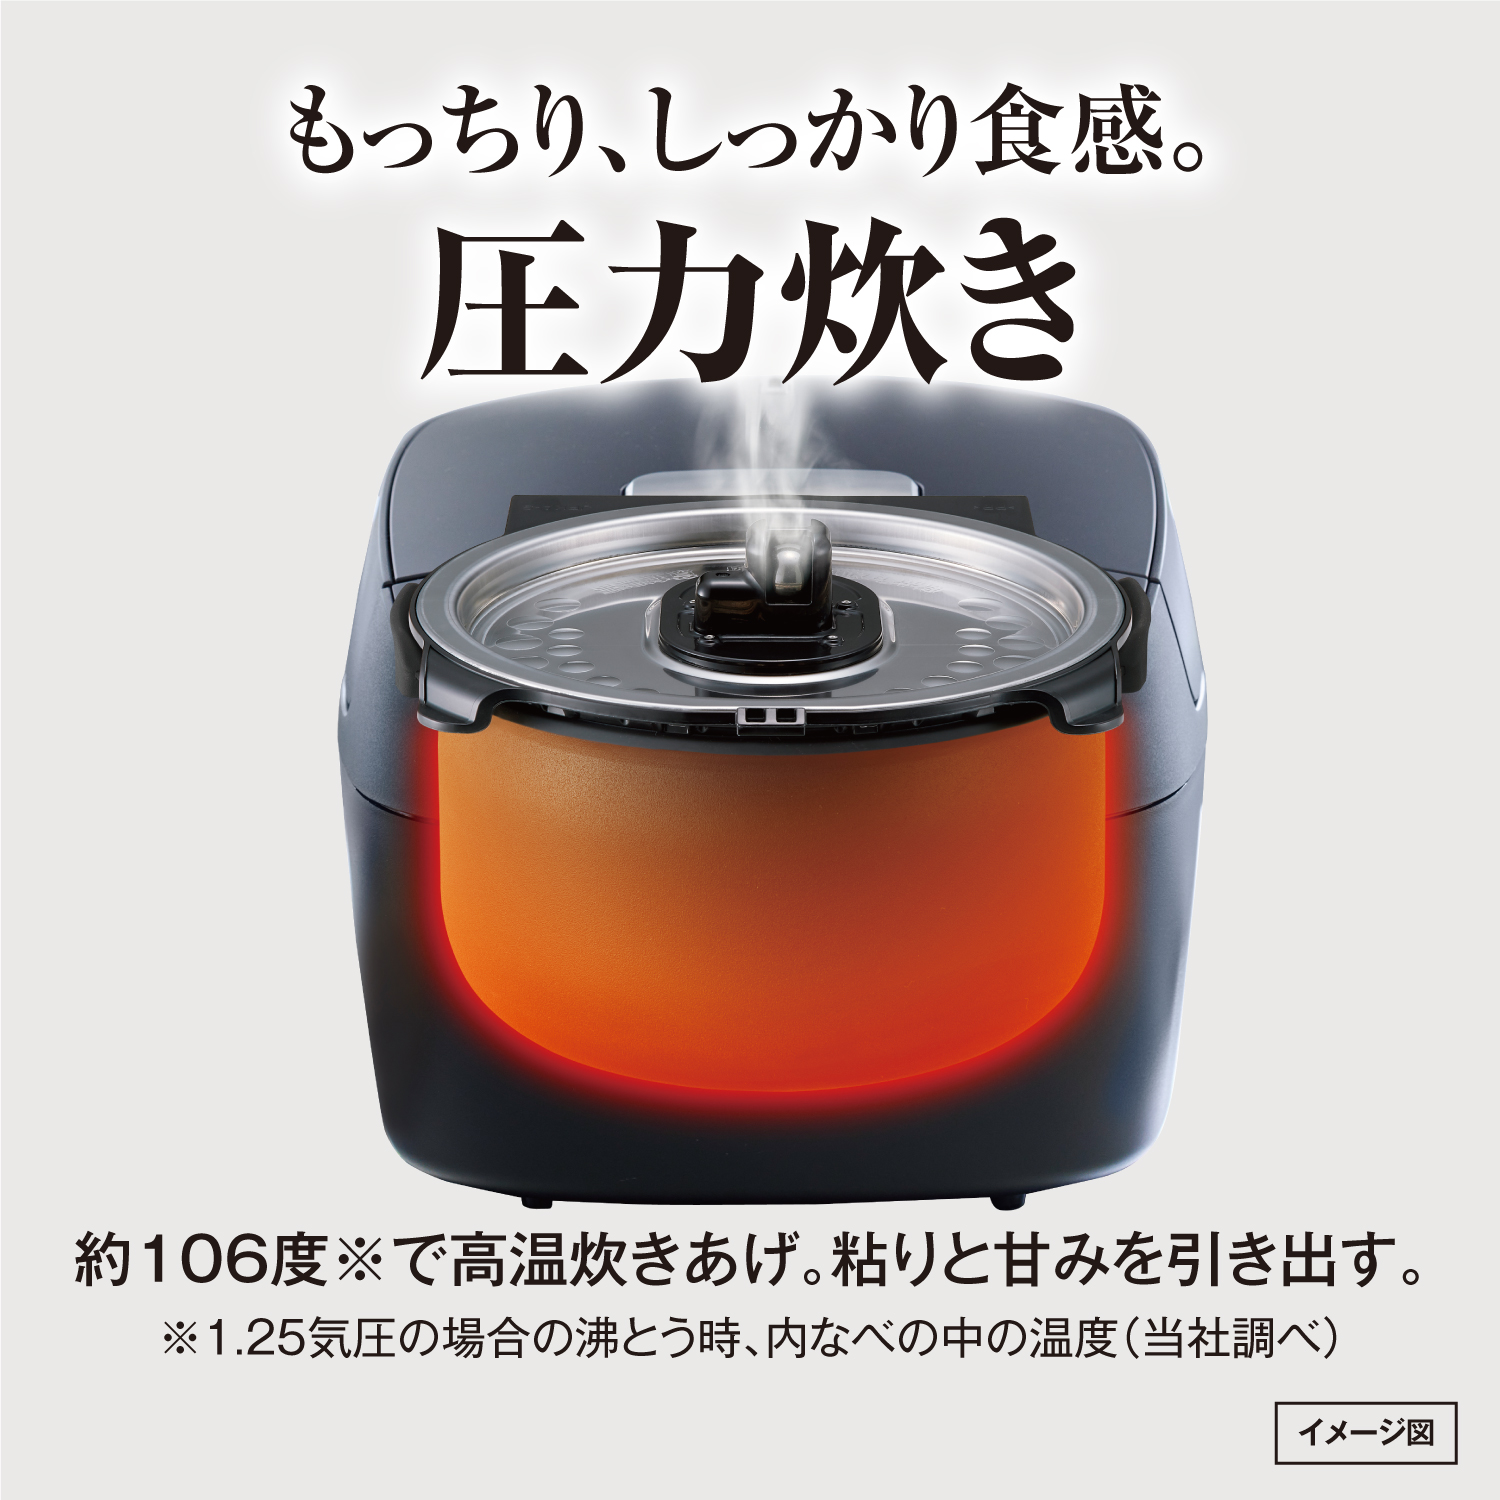 987タイガー魔法瓶 圧力IH炊飯器 キッチン家電 | dermascope.com